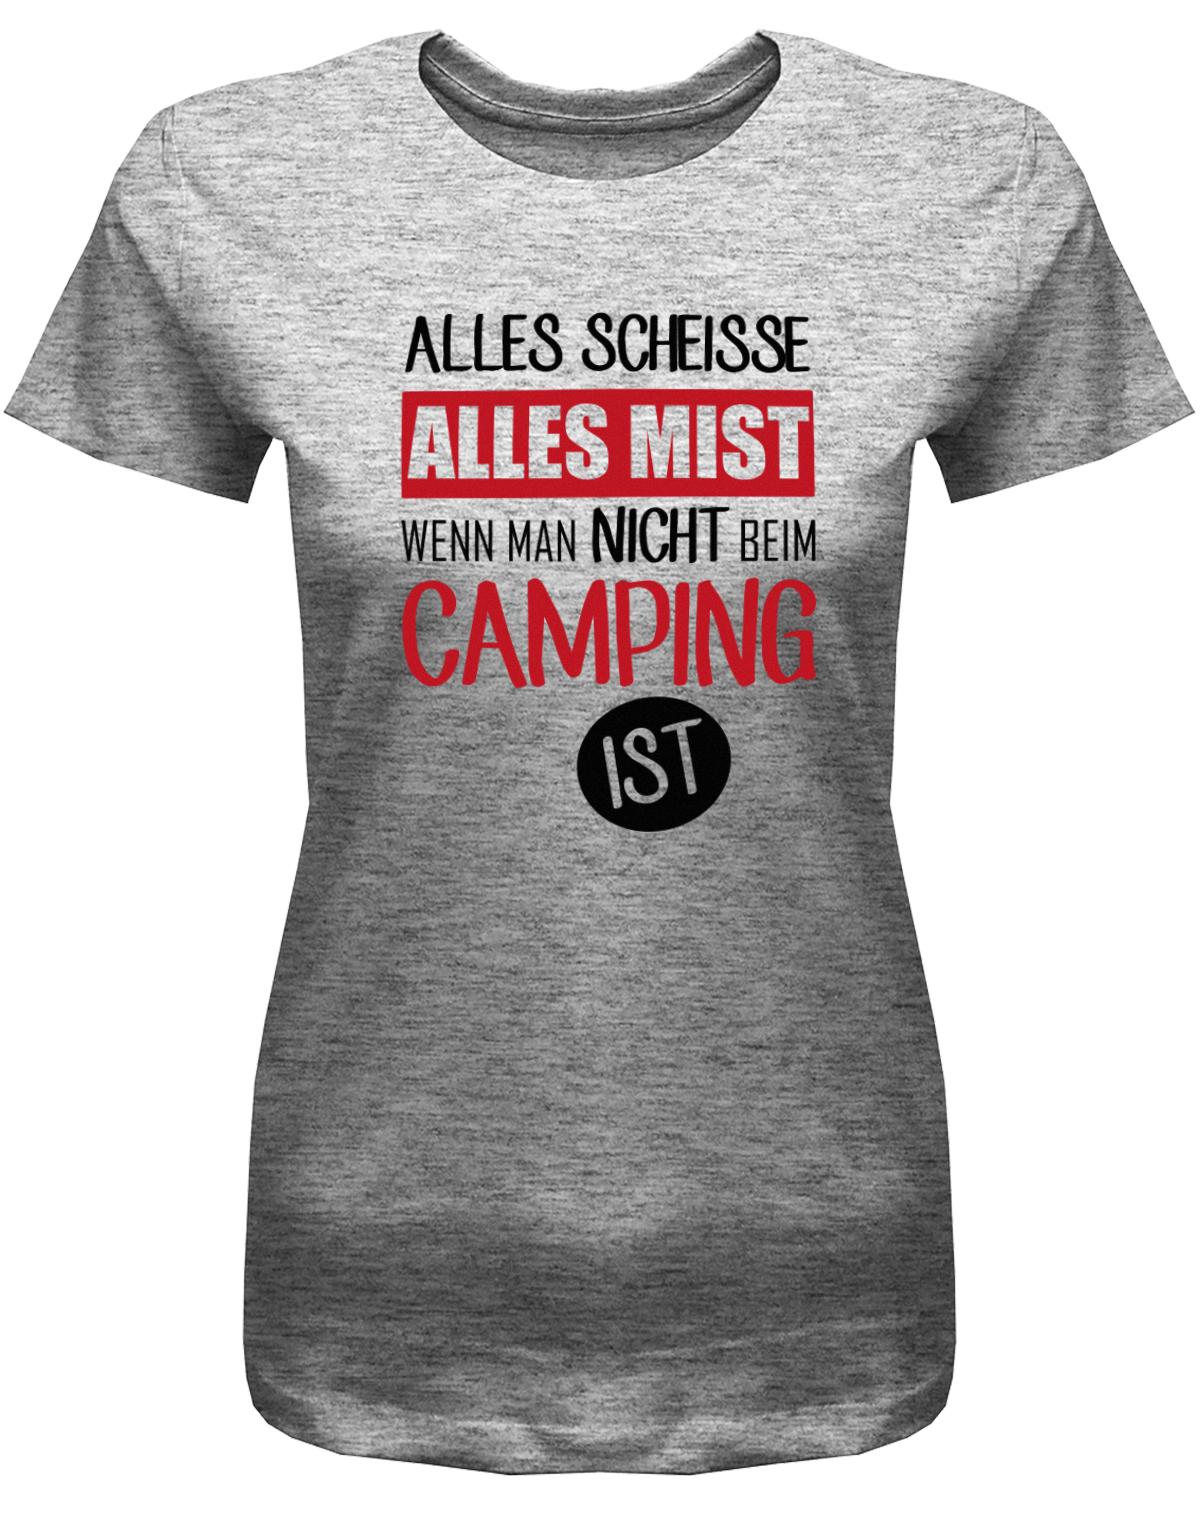 Alles-SCheisse-alles-Mist-wenn-man-nicht-bei-Camping-ist-Damen-Shirt-grauFJKMzAAtsBhye